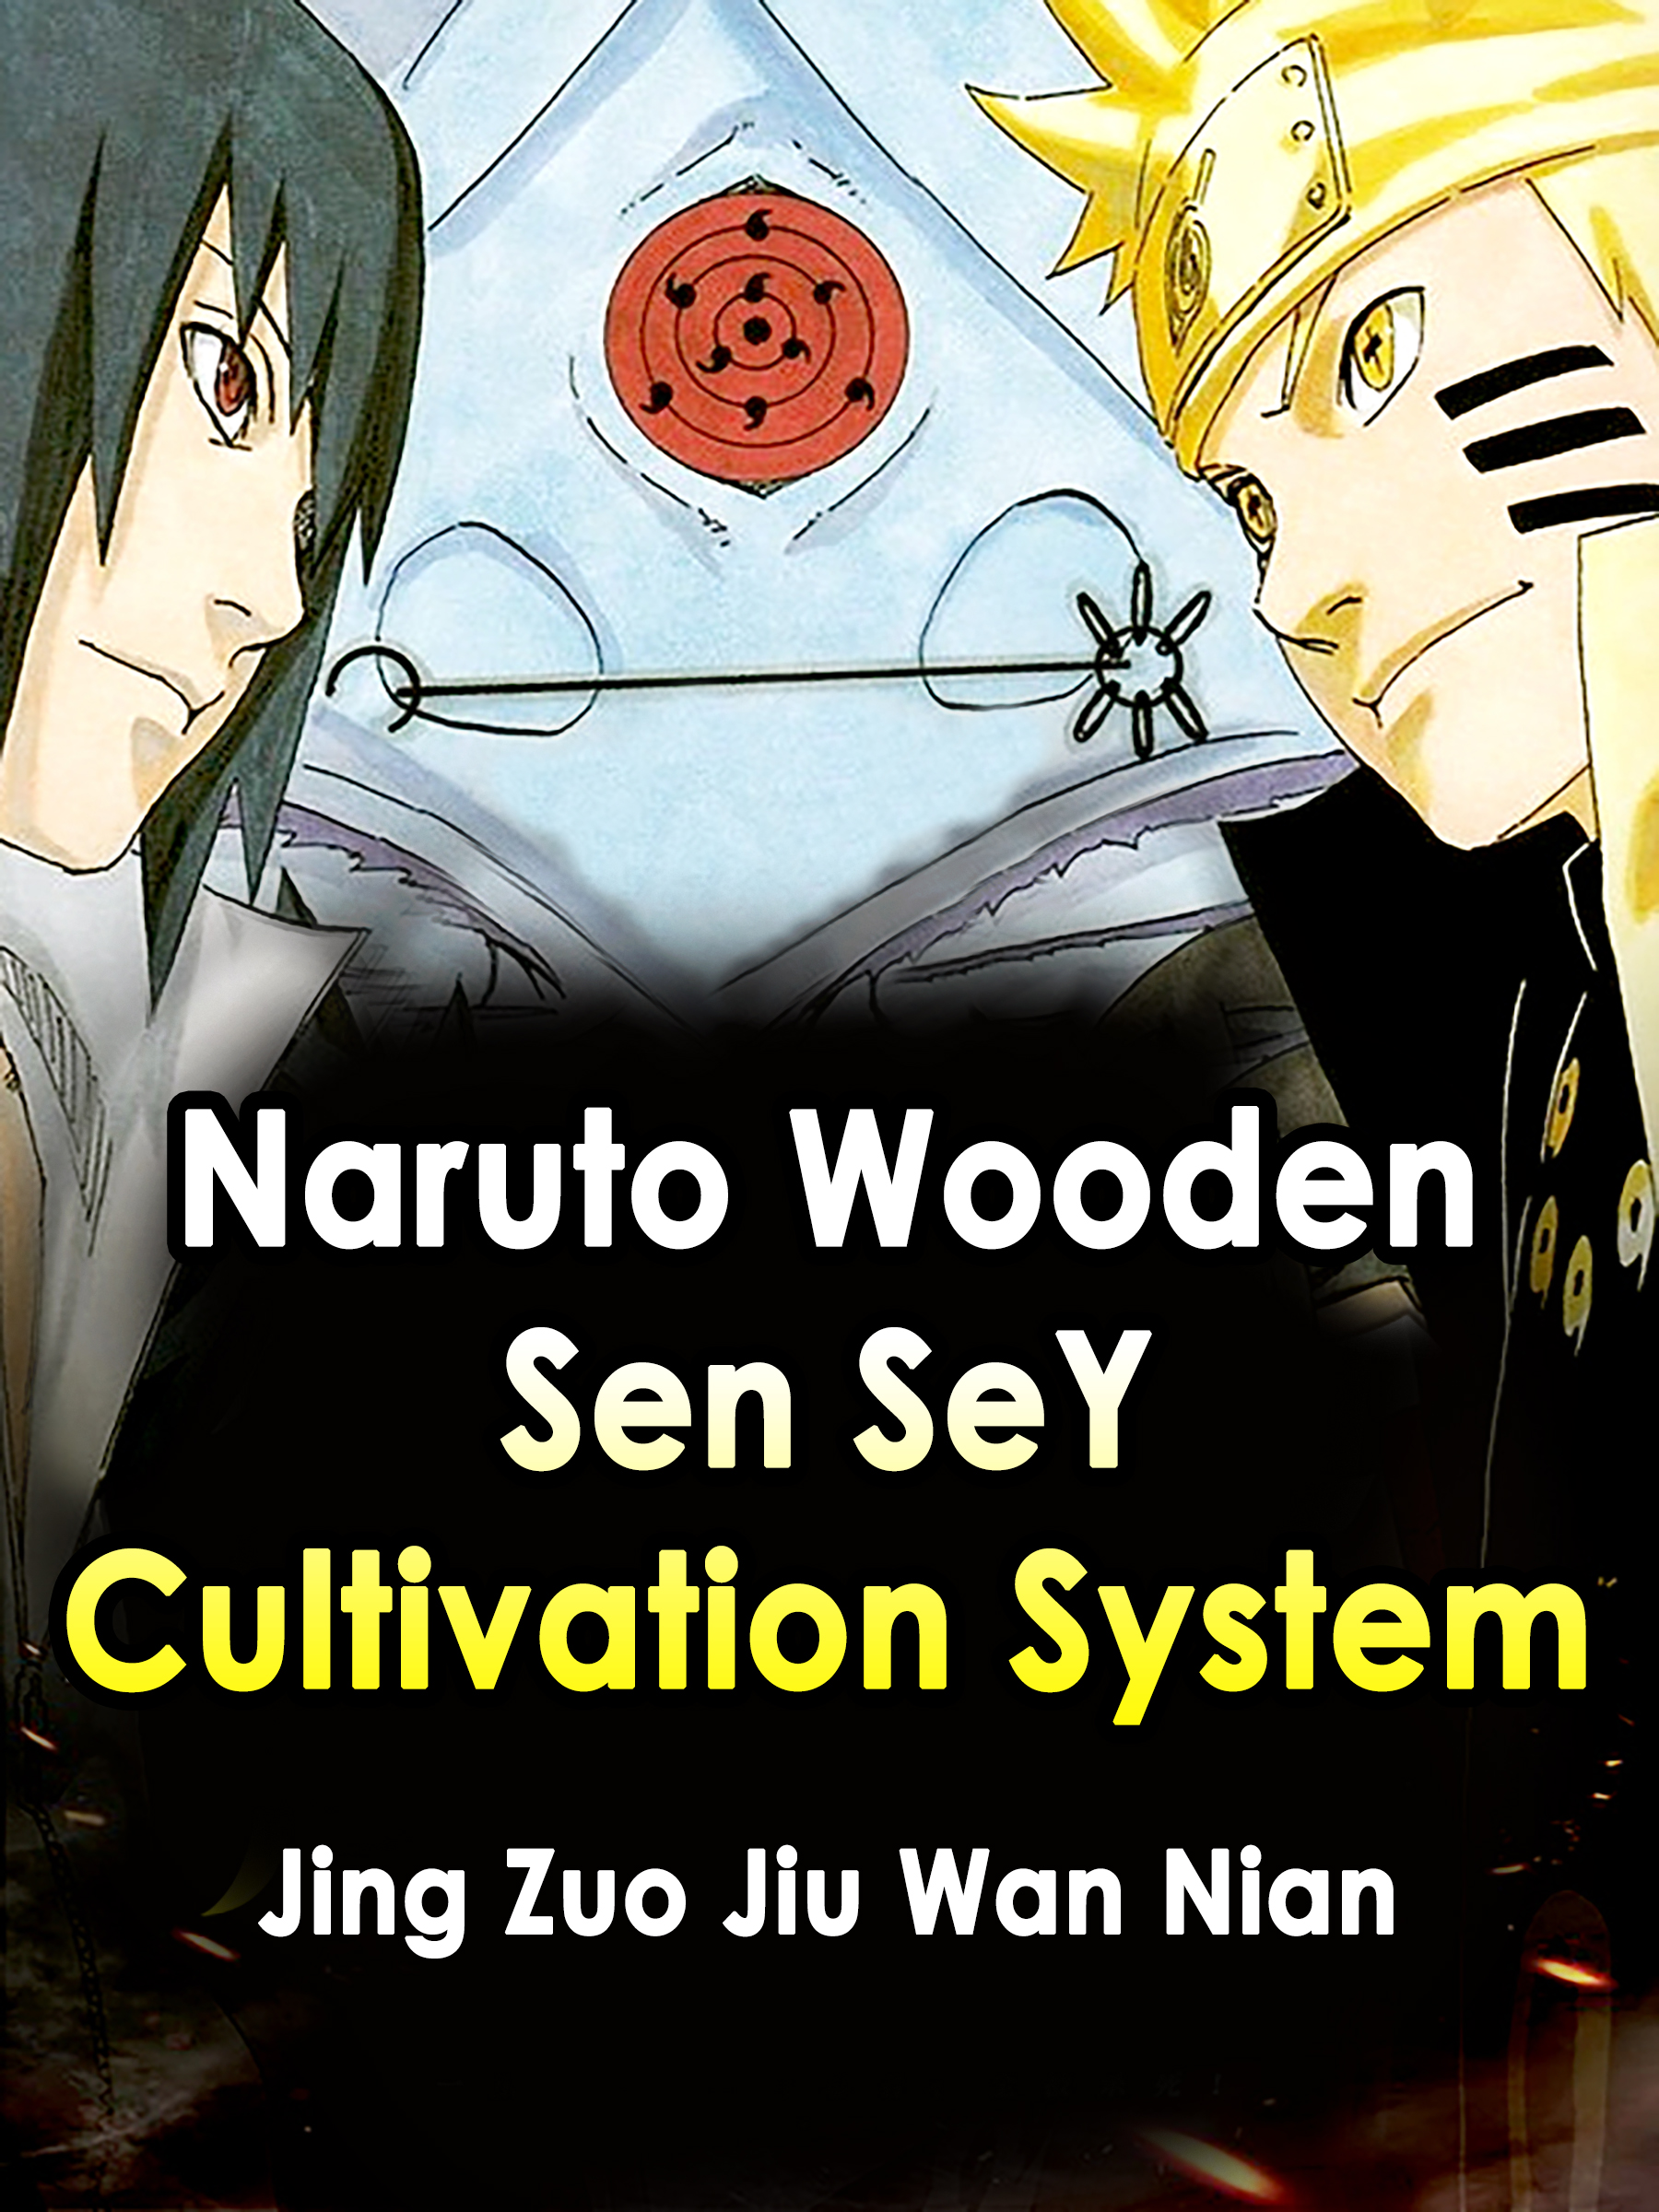 Naruto: Wooden Sen SeY Cultivation System Novel Full Story | Book -  BabelNovel